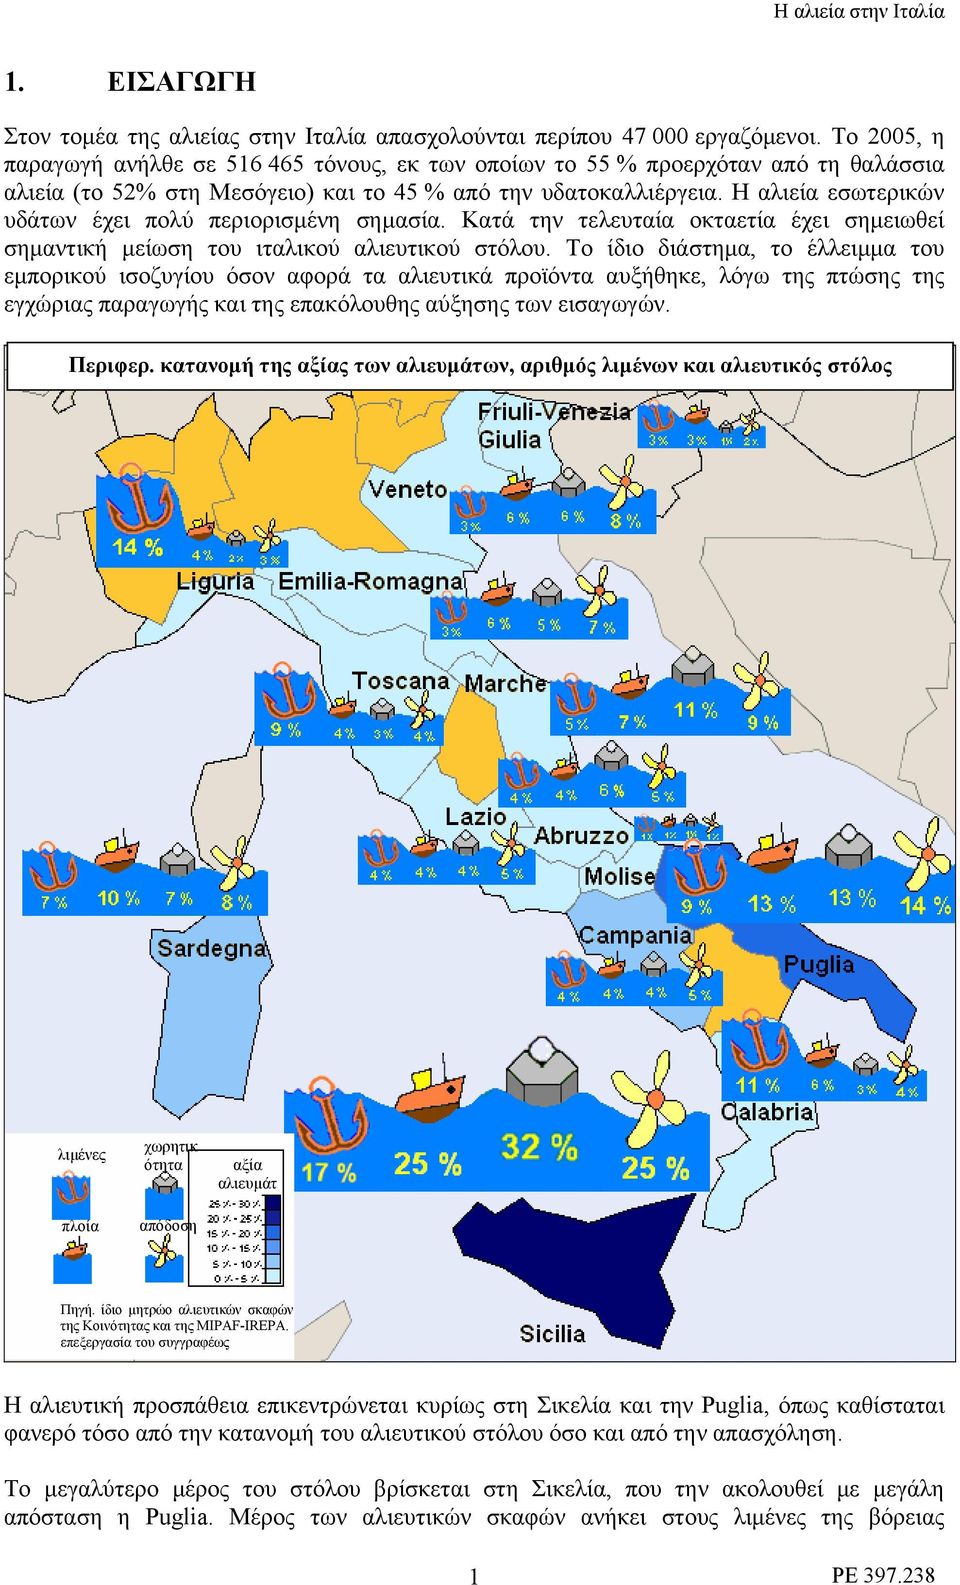 Η αλιεία εσωτερικών υδάτων έχει πολύ περιορισμένη σημασία. Κατά την τελευταία οκταετία έχει σημειωθεί σημαντική μείωση του ιταλικού αλιευτικού στόλου.